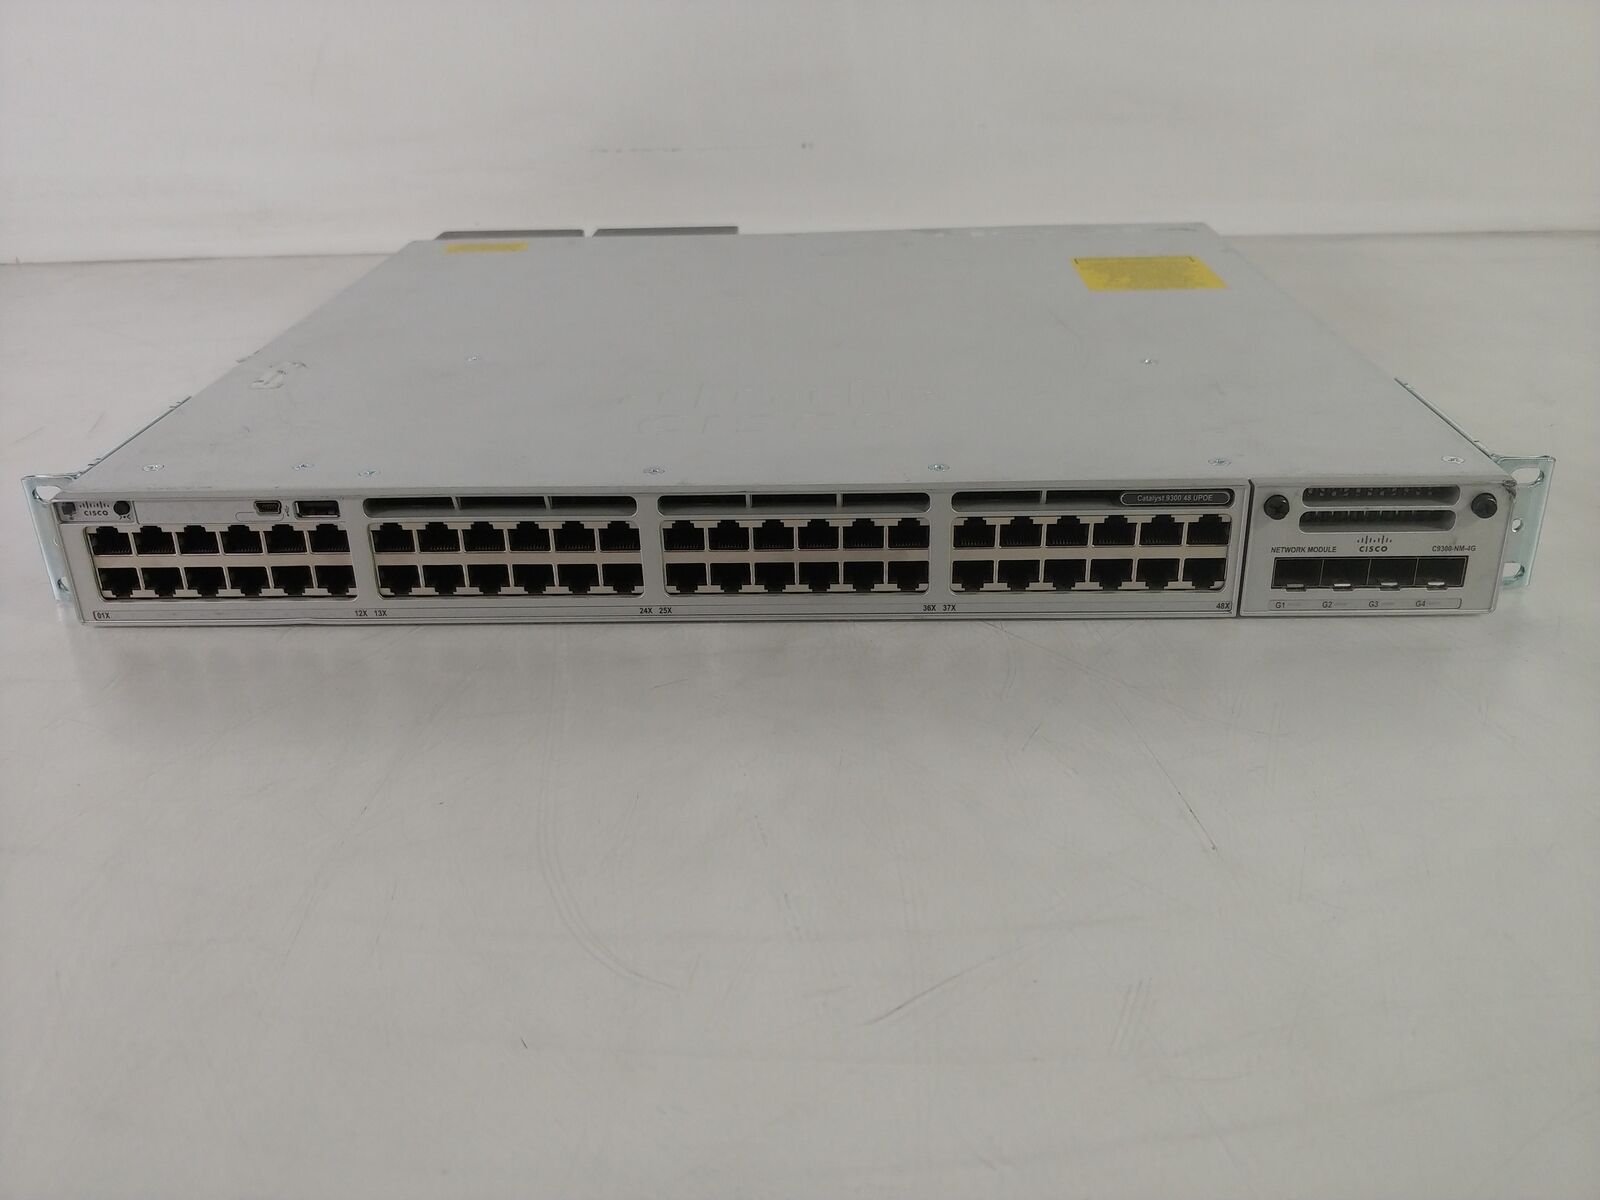 Cisco Catalyst 9300 C9300-48U-E 48-Port Gigabit Managed UPoE Ethernet Switch